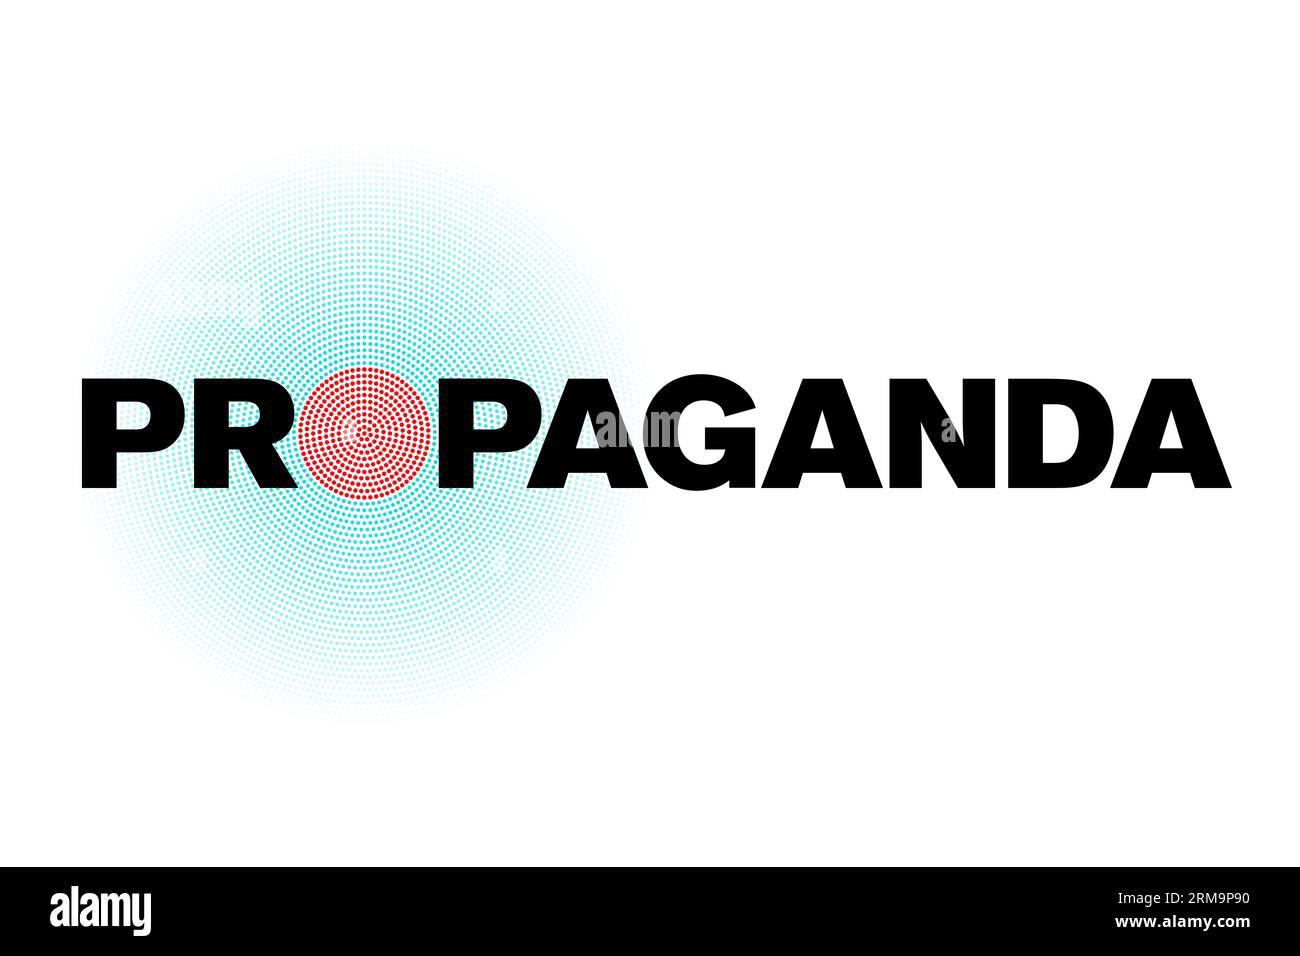 La parola propaganda in grassetto maiuscolo nero, ad eccezione della lettera o, al cui posto è posto un cerchio di punti rossi. Foto Stock